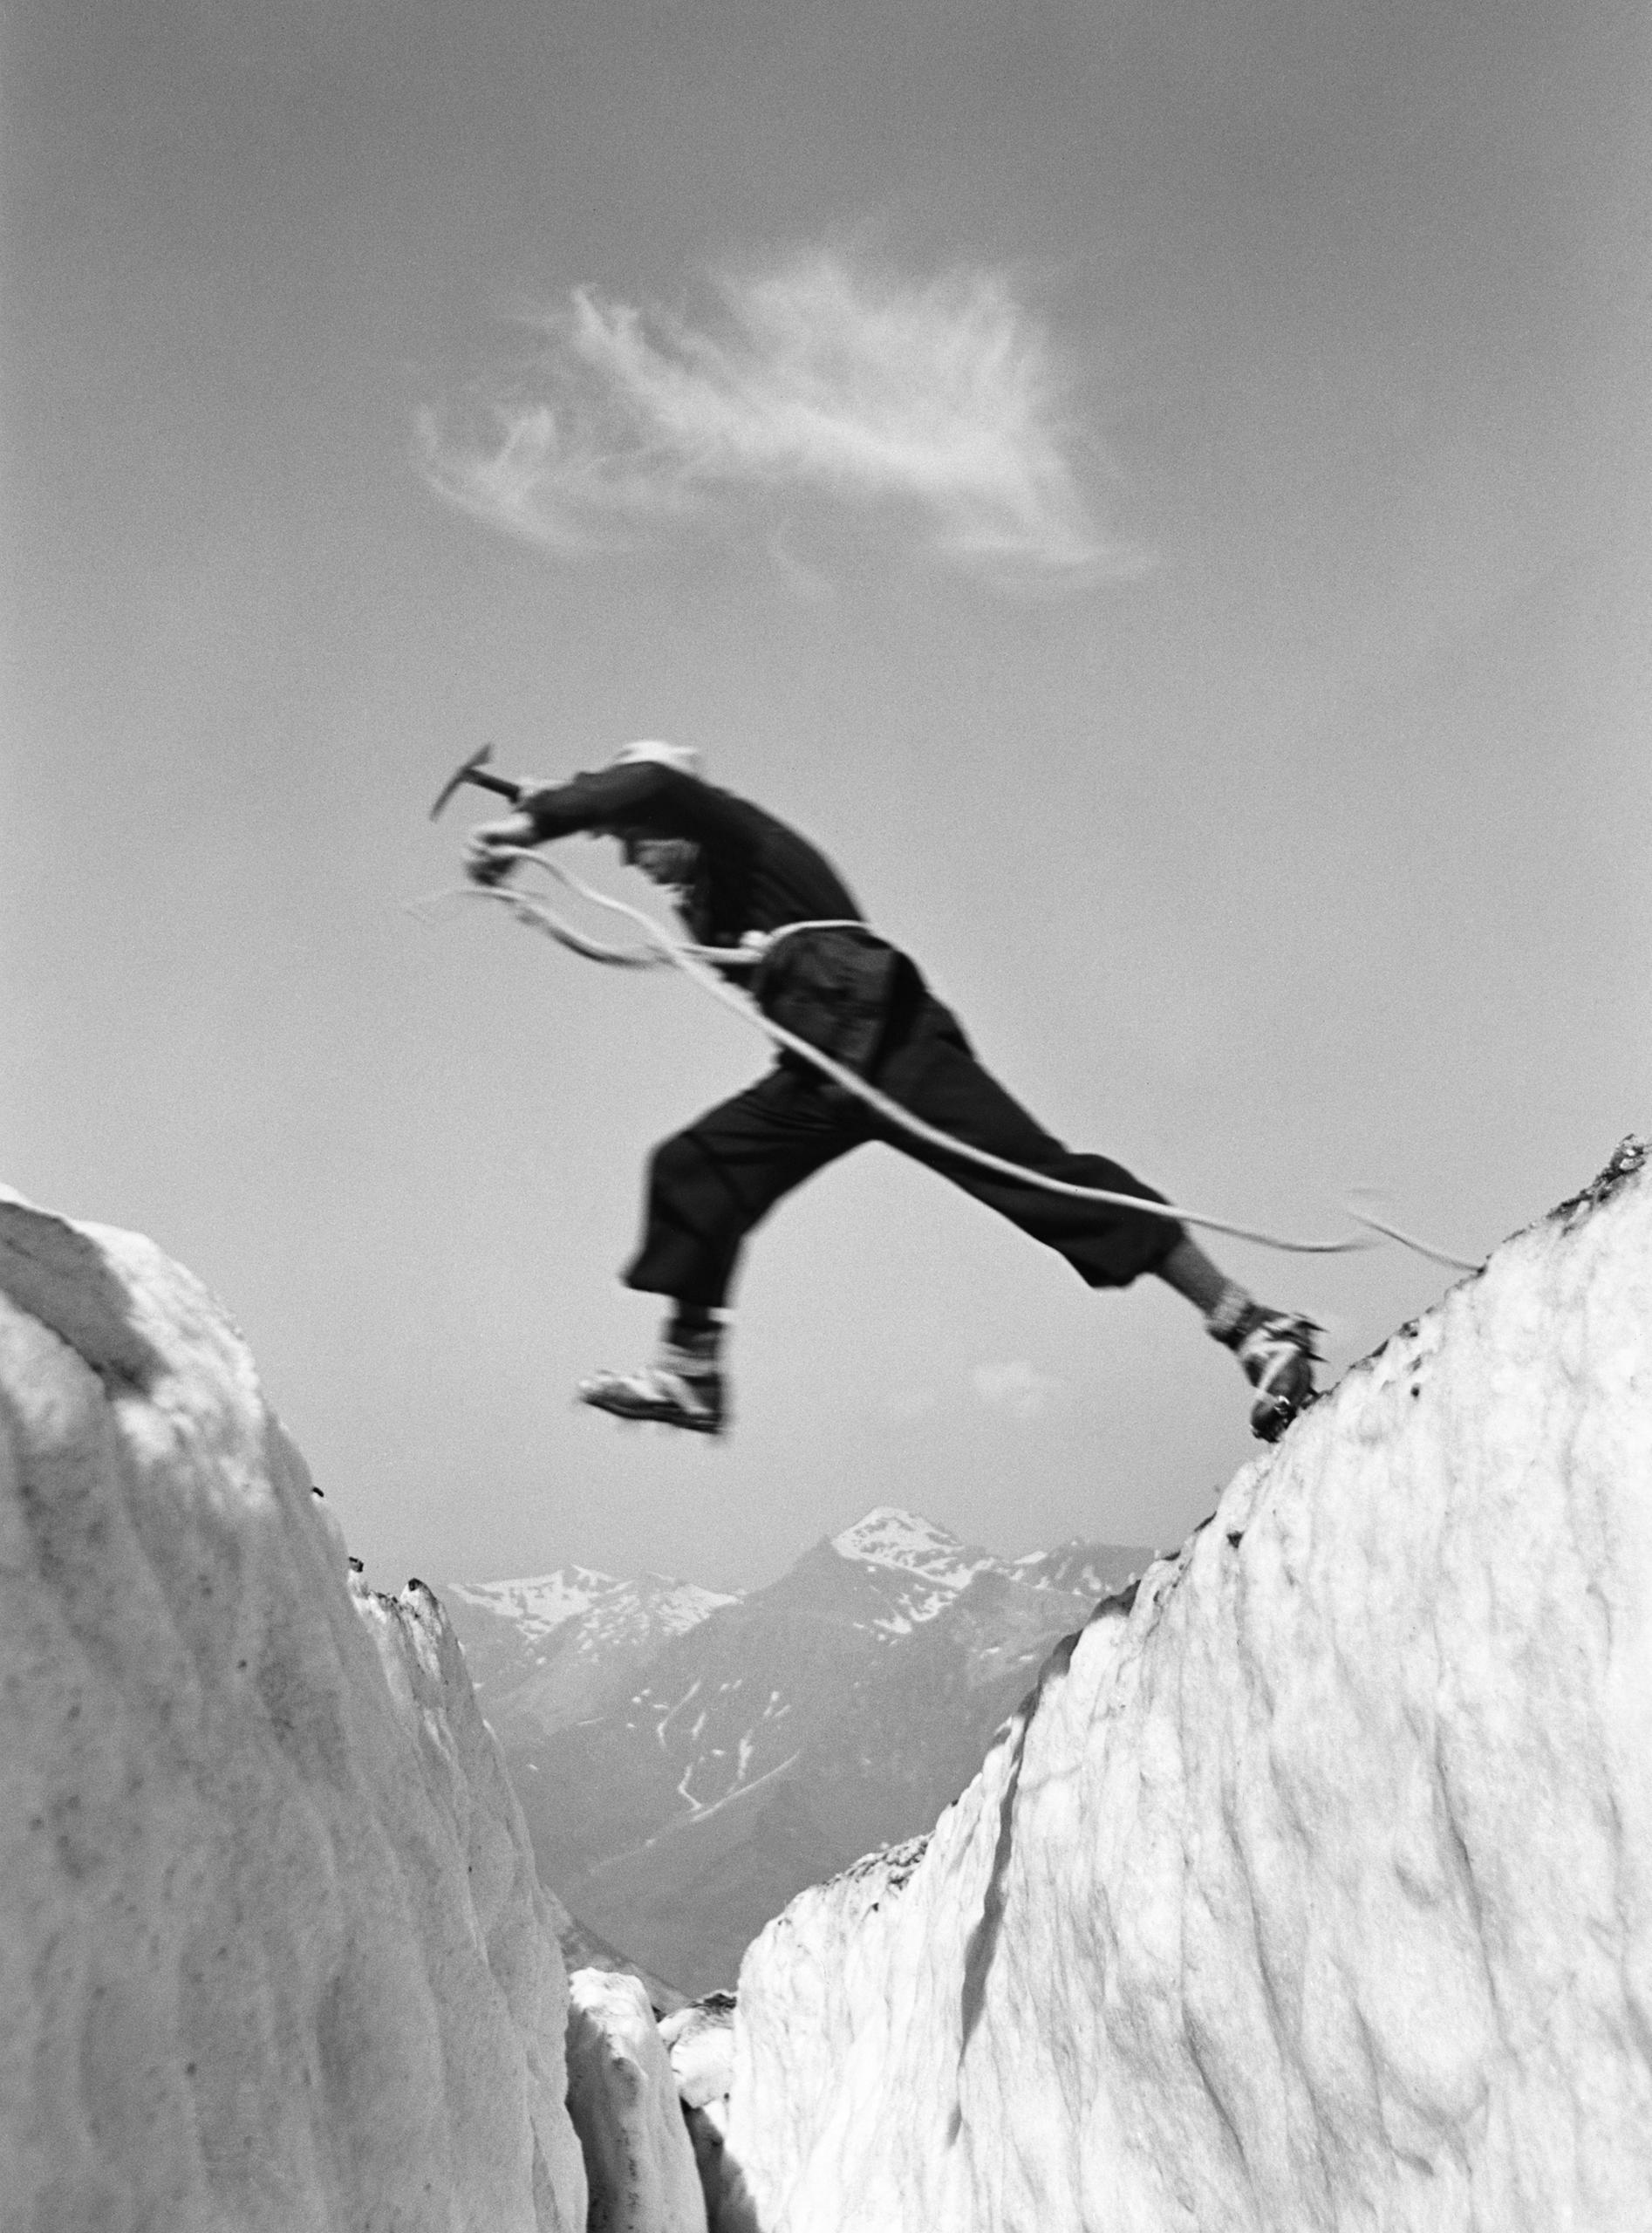 صورة بالأبيض والأسود لقفزة يقوم بها رجل عبر شق جليدي في منطقة جبلية